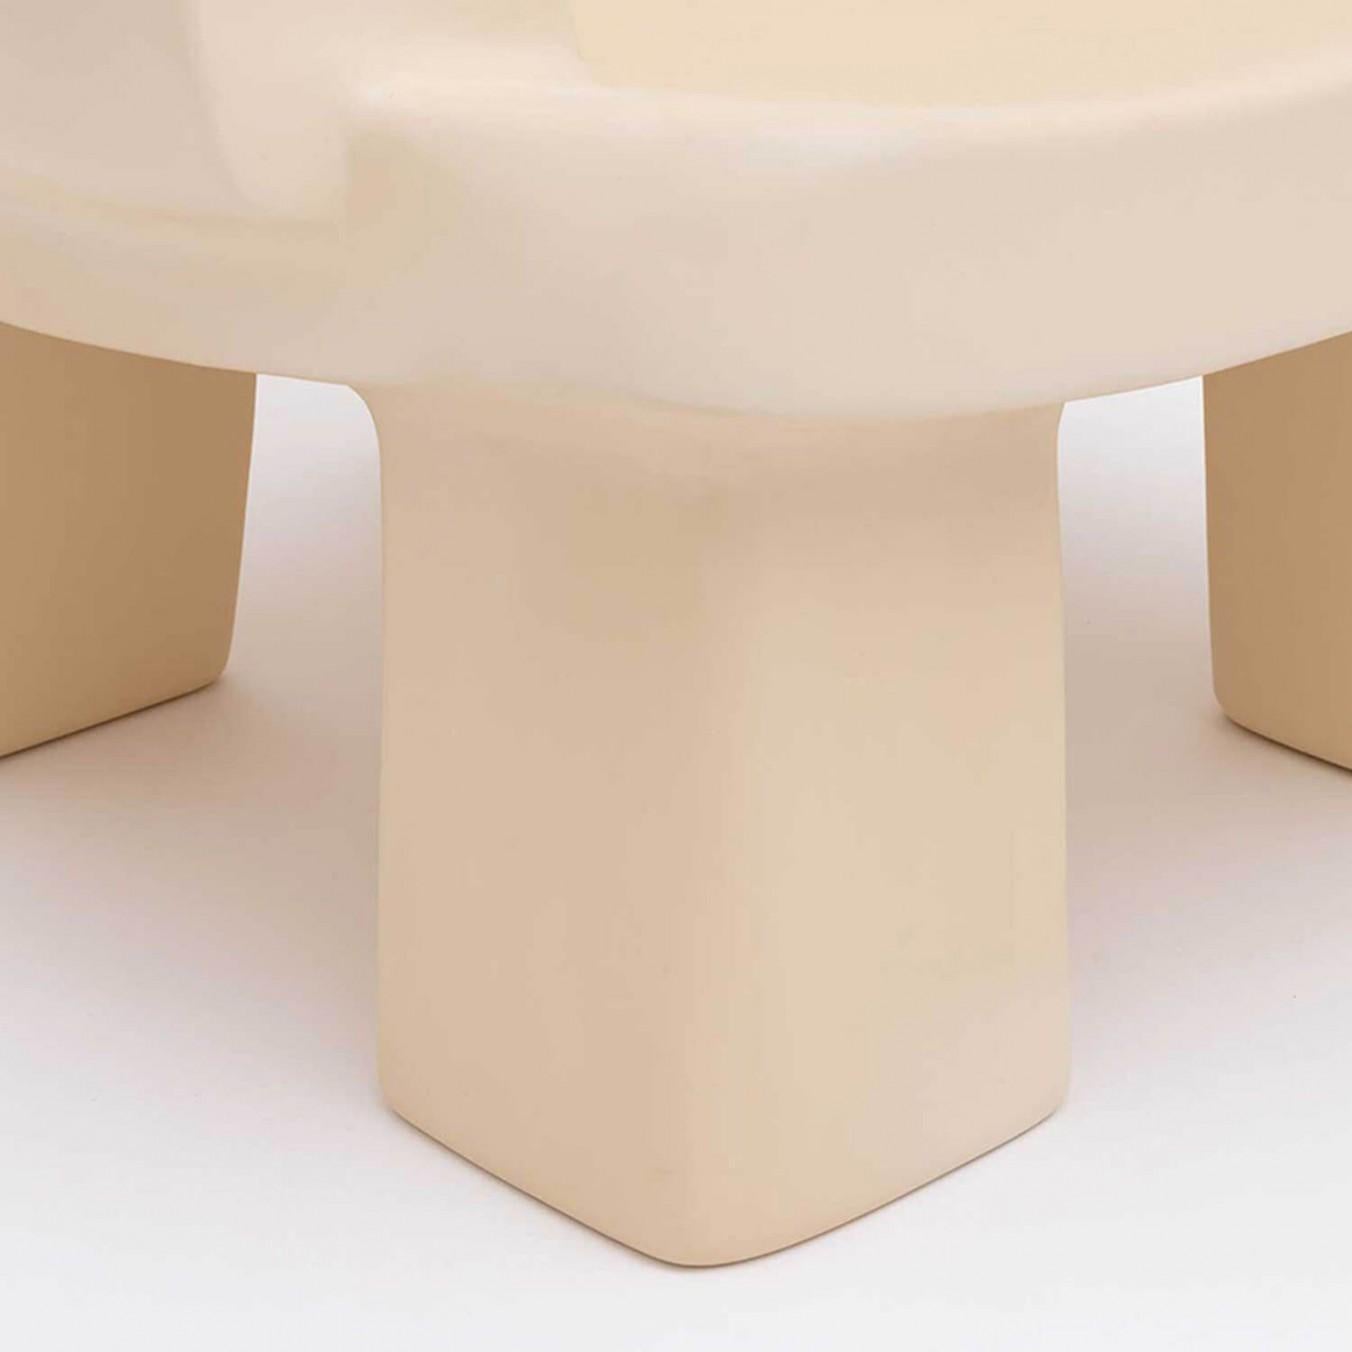 Zeitgenössischer Sessel aus Fiberglas - Fudge Chair von Faye Toogood. Dieses Modell ist in der cremefarbenen Ausführung aus Fiberglas abgebildet. 
Entwurf: Faye Toogood
Material: Fiberglas 
Erhältlich auch in Anthrazit, Malachit oder Malve